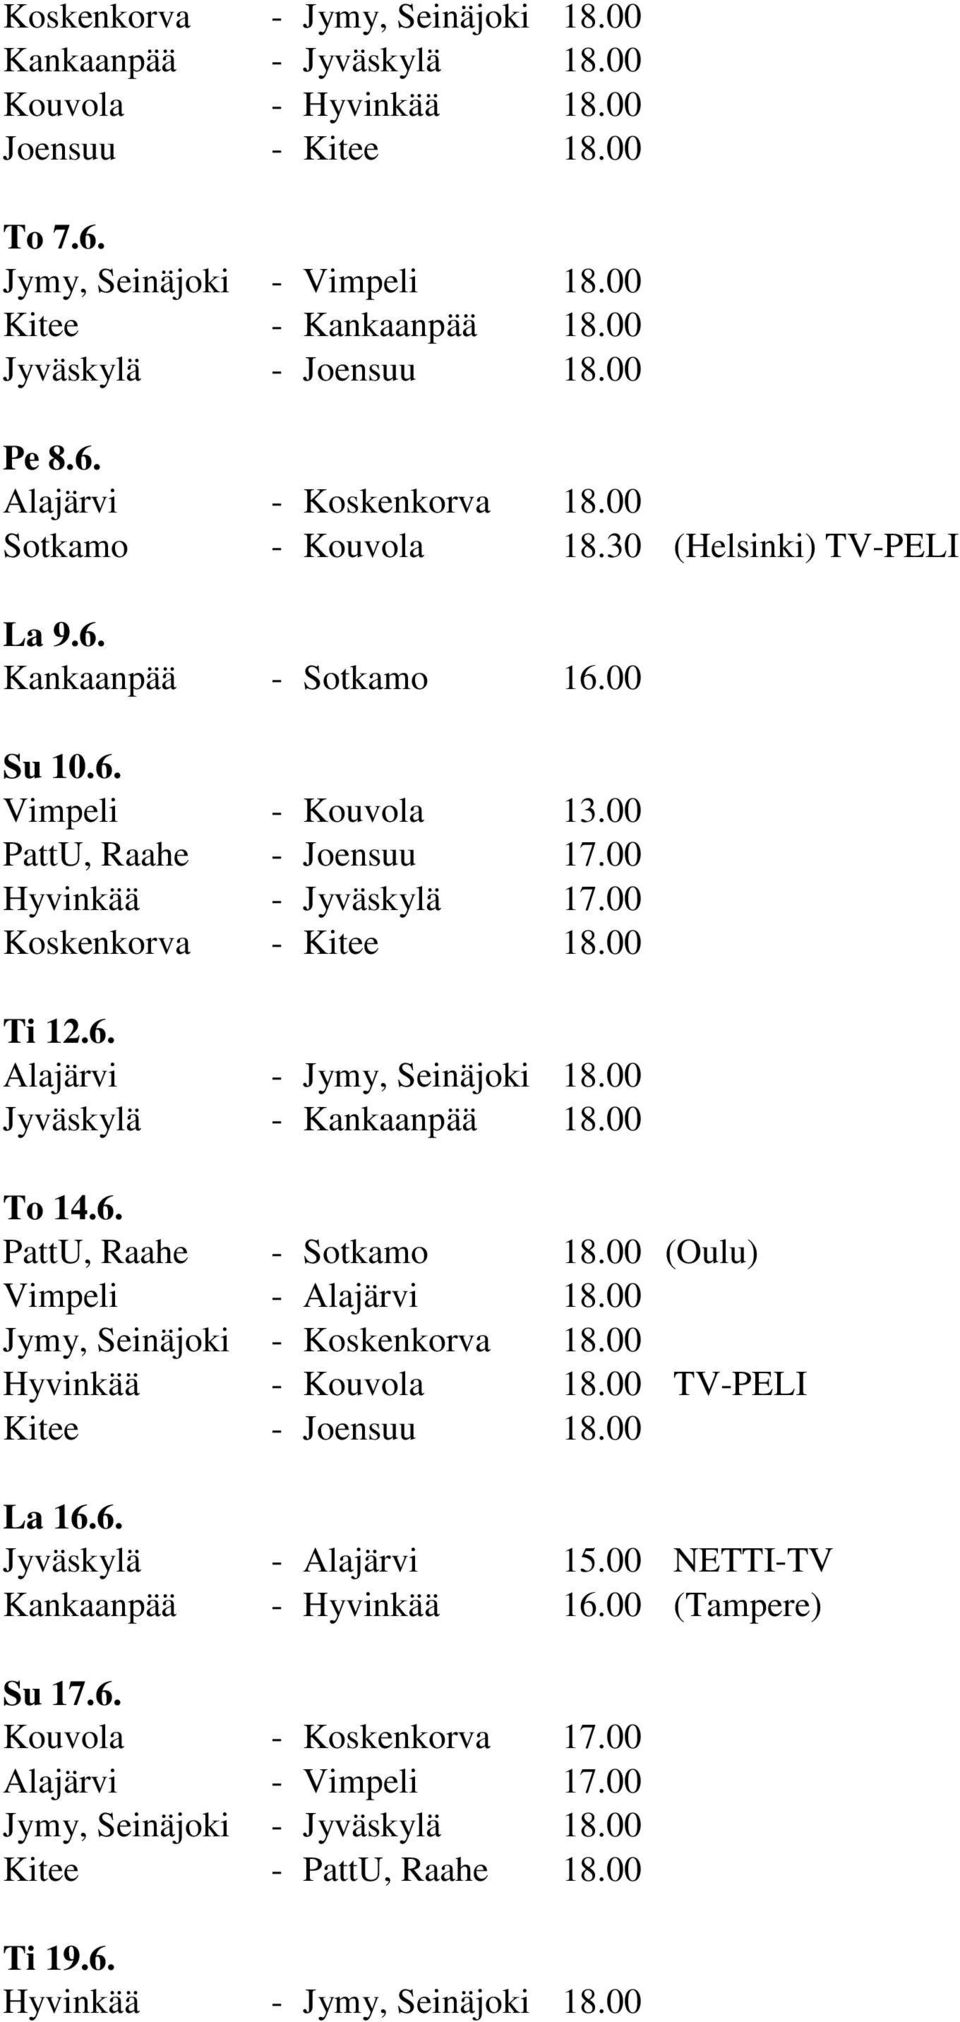 00 Hyvinkää - Jyväskylä 17.00 Koskenkorva - Kitee 18.00 Ti 12.6. Alajärvi - Jymy, Seinäjoki 18.00 Jyväskylä - Kankaanpää 18.00 To 14.6. PattU, Raahe - Sotkamo 18.00 (Oulu) Vimpeli - Alajärvi 18.